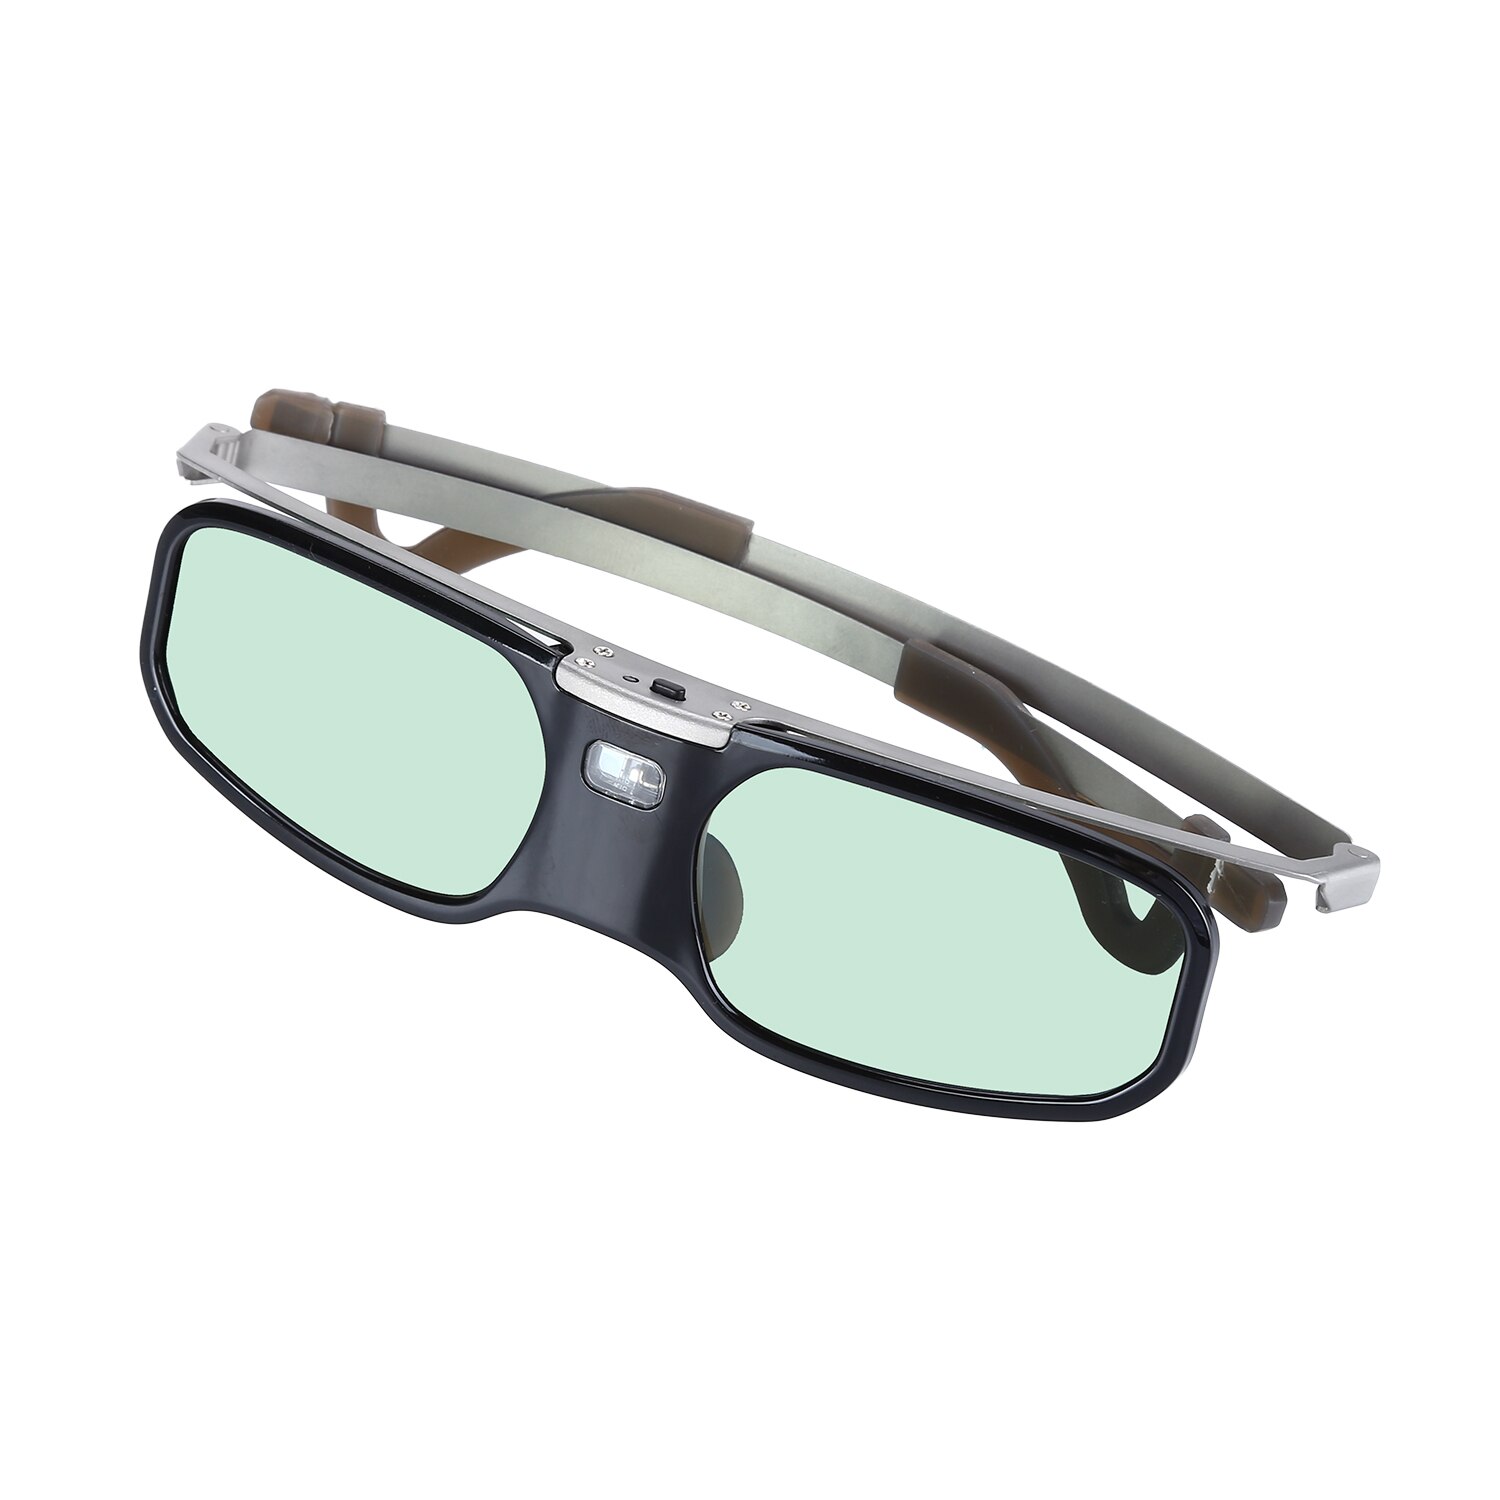 BOBLOV 3D lunettes RX-30S 96-144HZ Rechargeable obturateur actif pour Panasonic Samsung Optoma Sharp BenQ 3D dlp-link projecteur